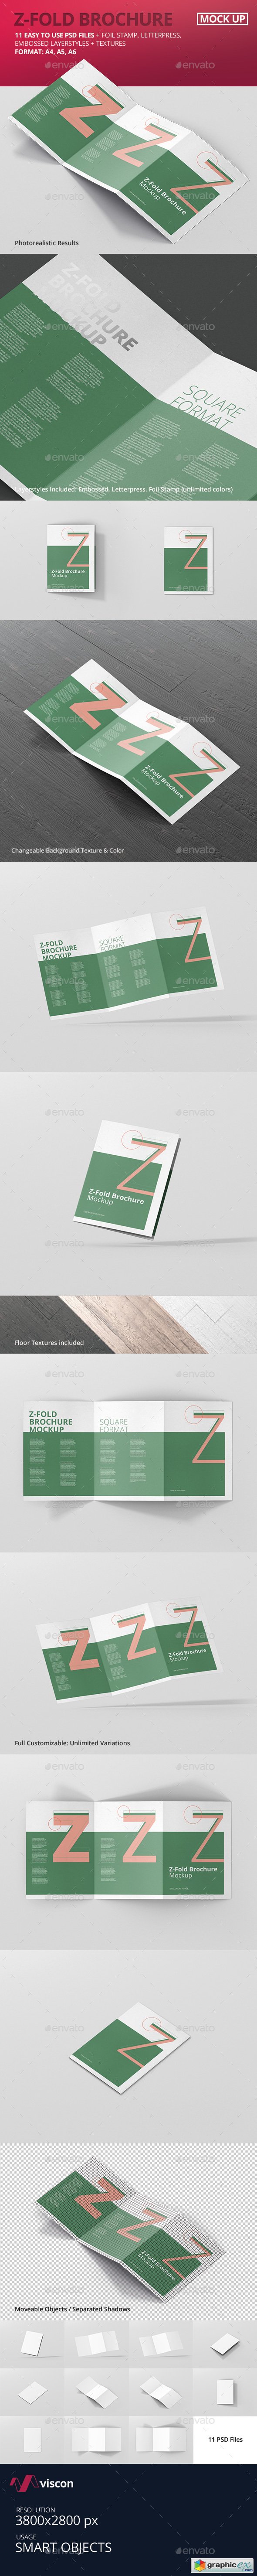 Z-Fold Brochure Mockup - Din A4 A5 A6